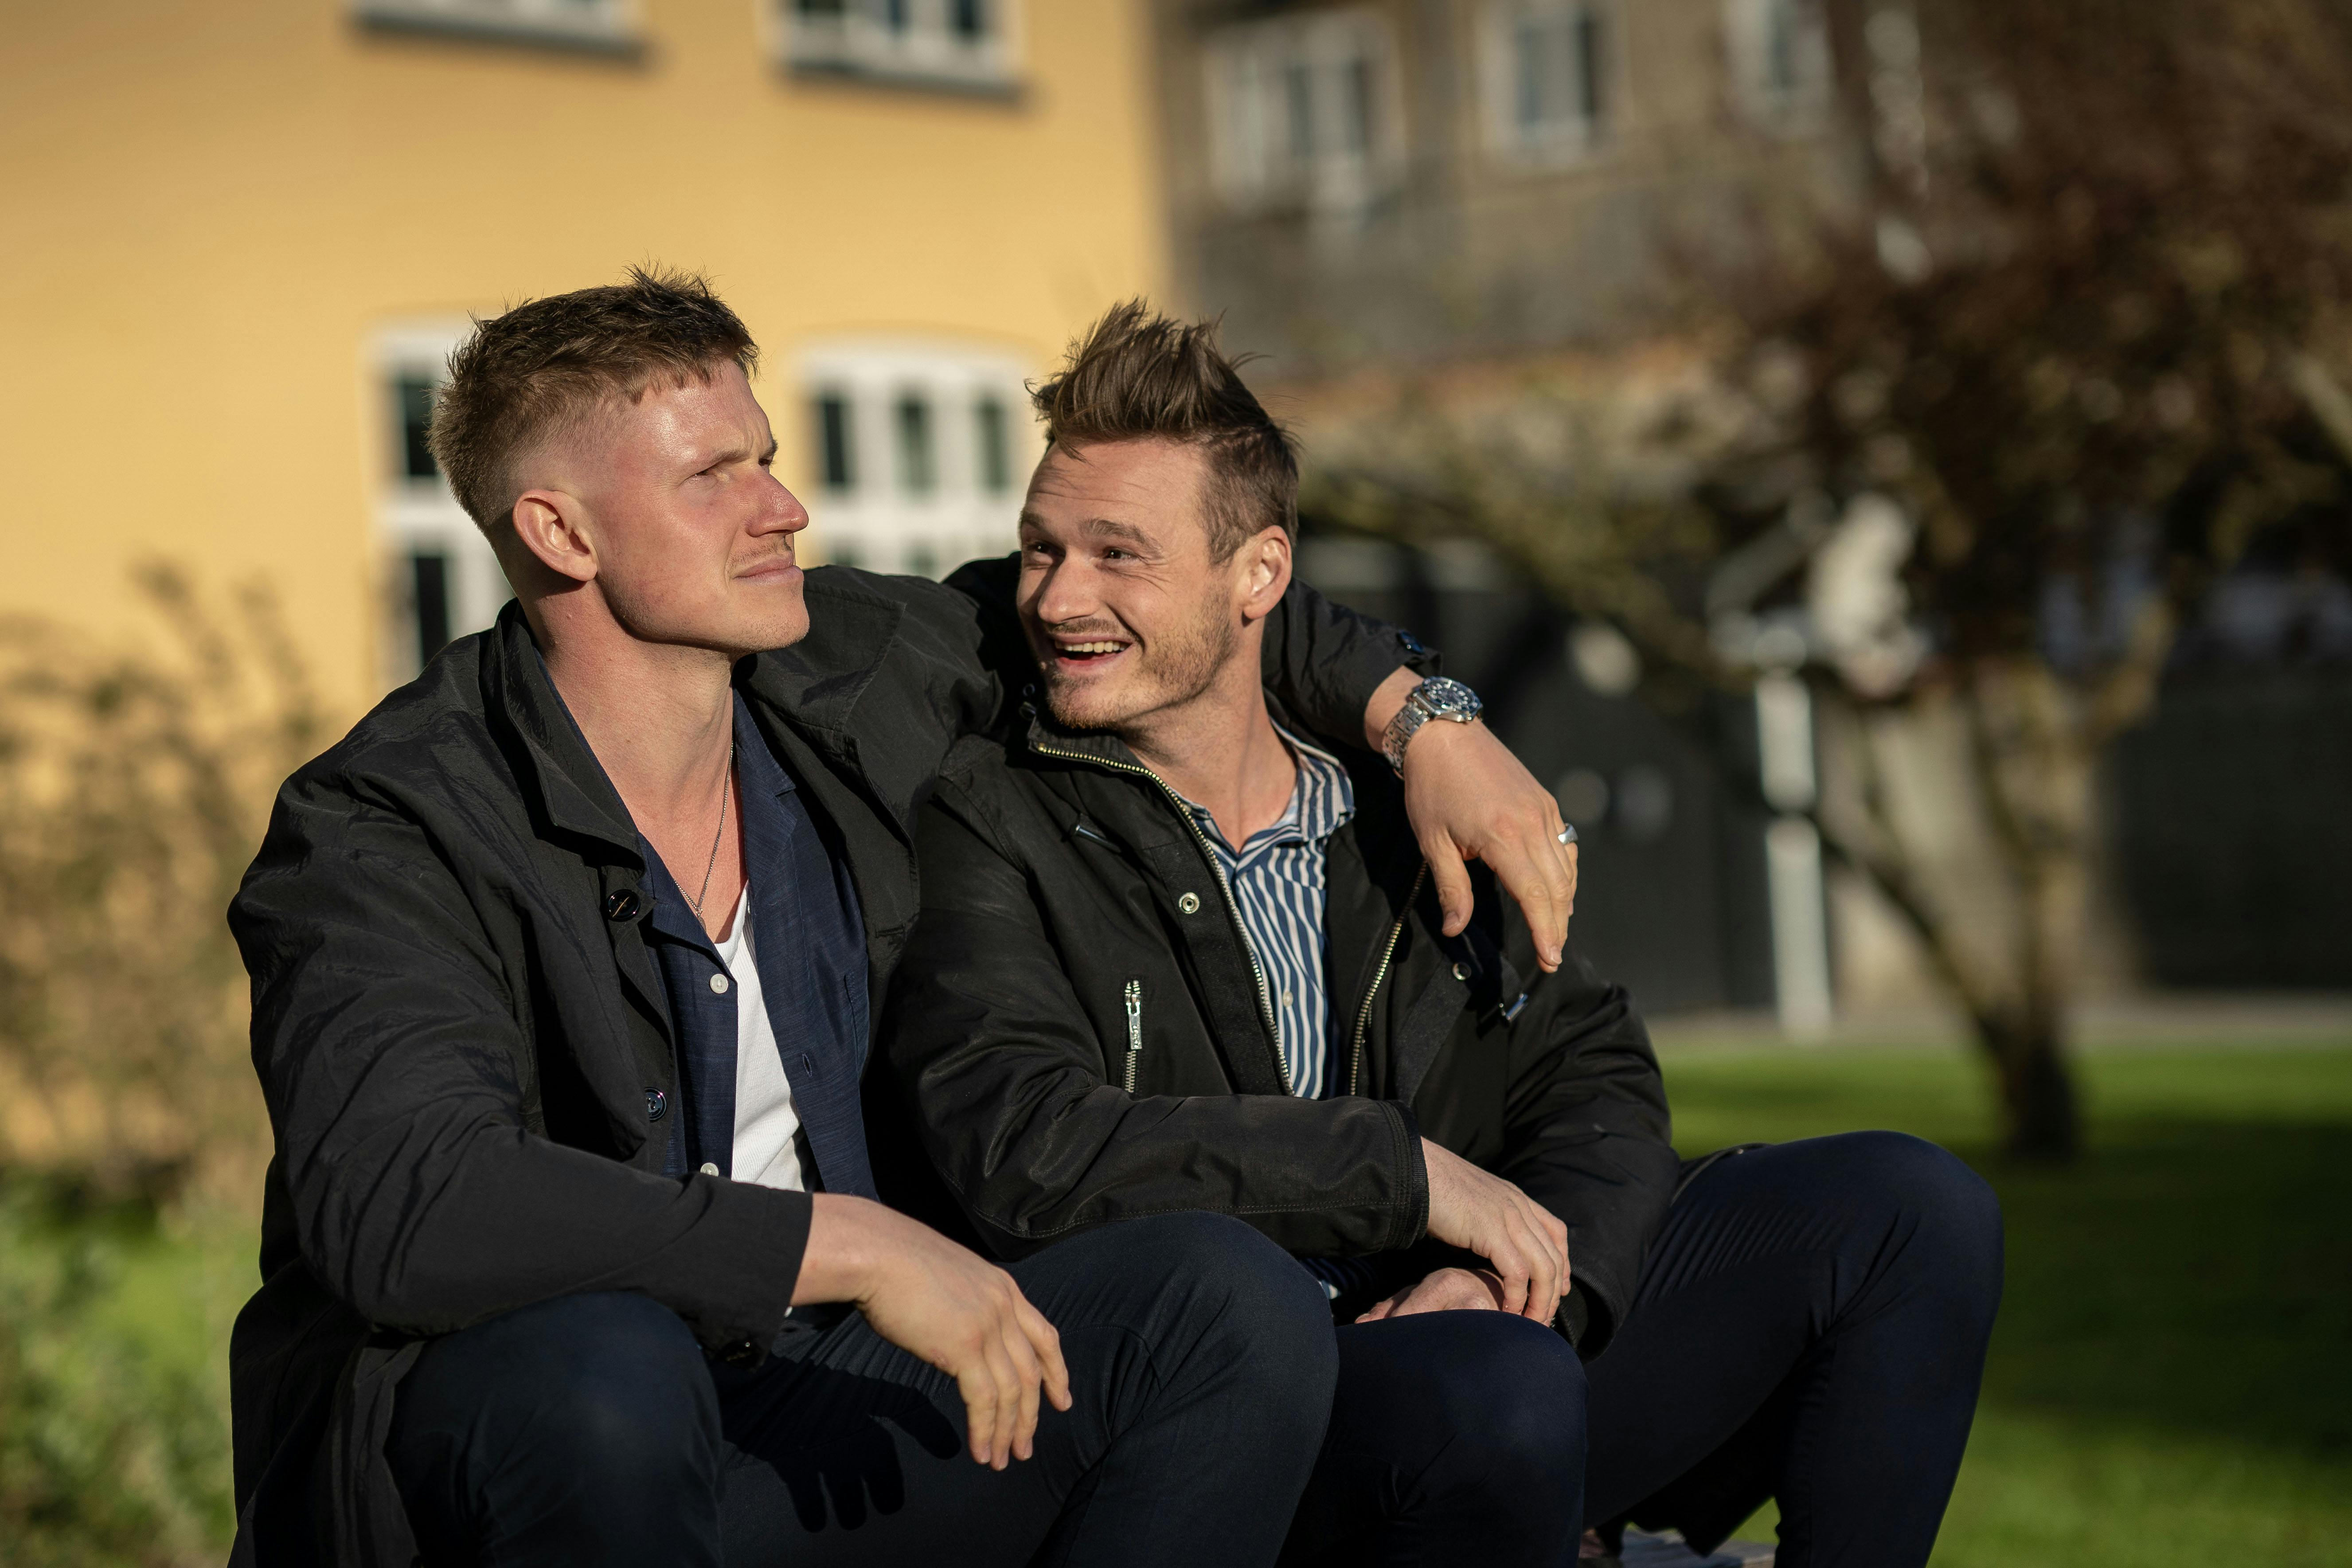 Vennerne Christian og Nicolai fik en flot andenplads i TV 2-programmet "Først til verdens ende". Heldigvis vandt de mange gode oplevelser sammen, hvor de lærte hinanden at kende på et dybere niveau.&nbsp;
